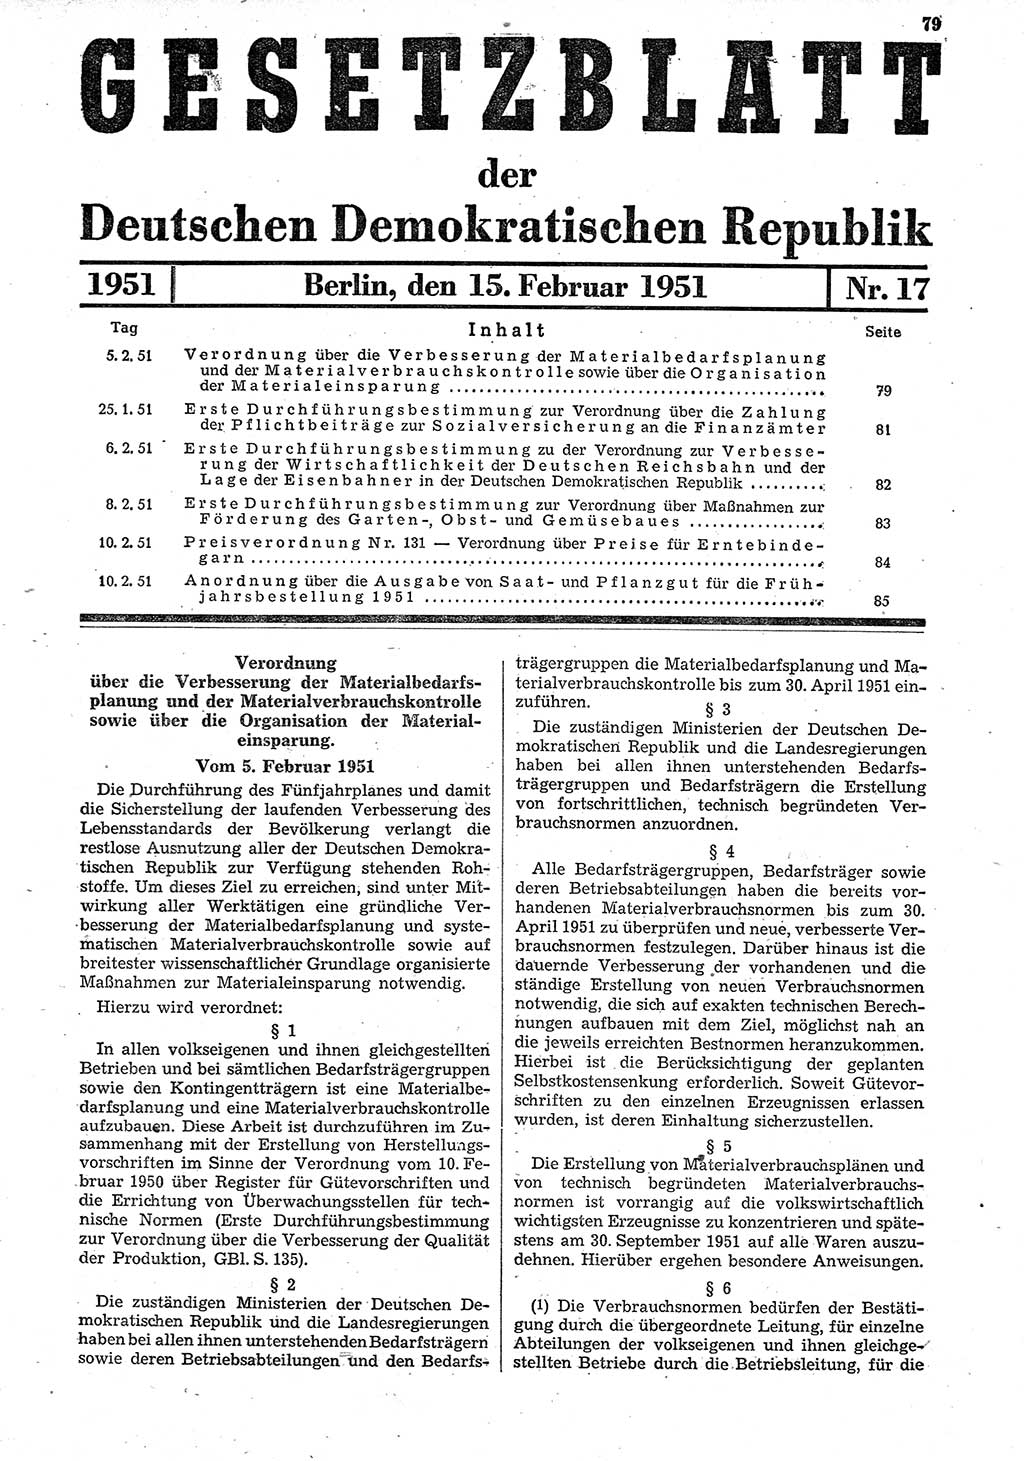 Gesetzblatt (GBl.) der Deutschen Demokratischen Republik (DDR) 1951, Seite 79 (GBl. DDR 1951, S. 79)